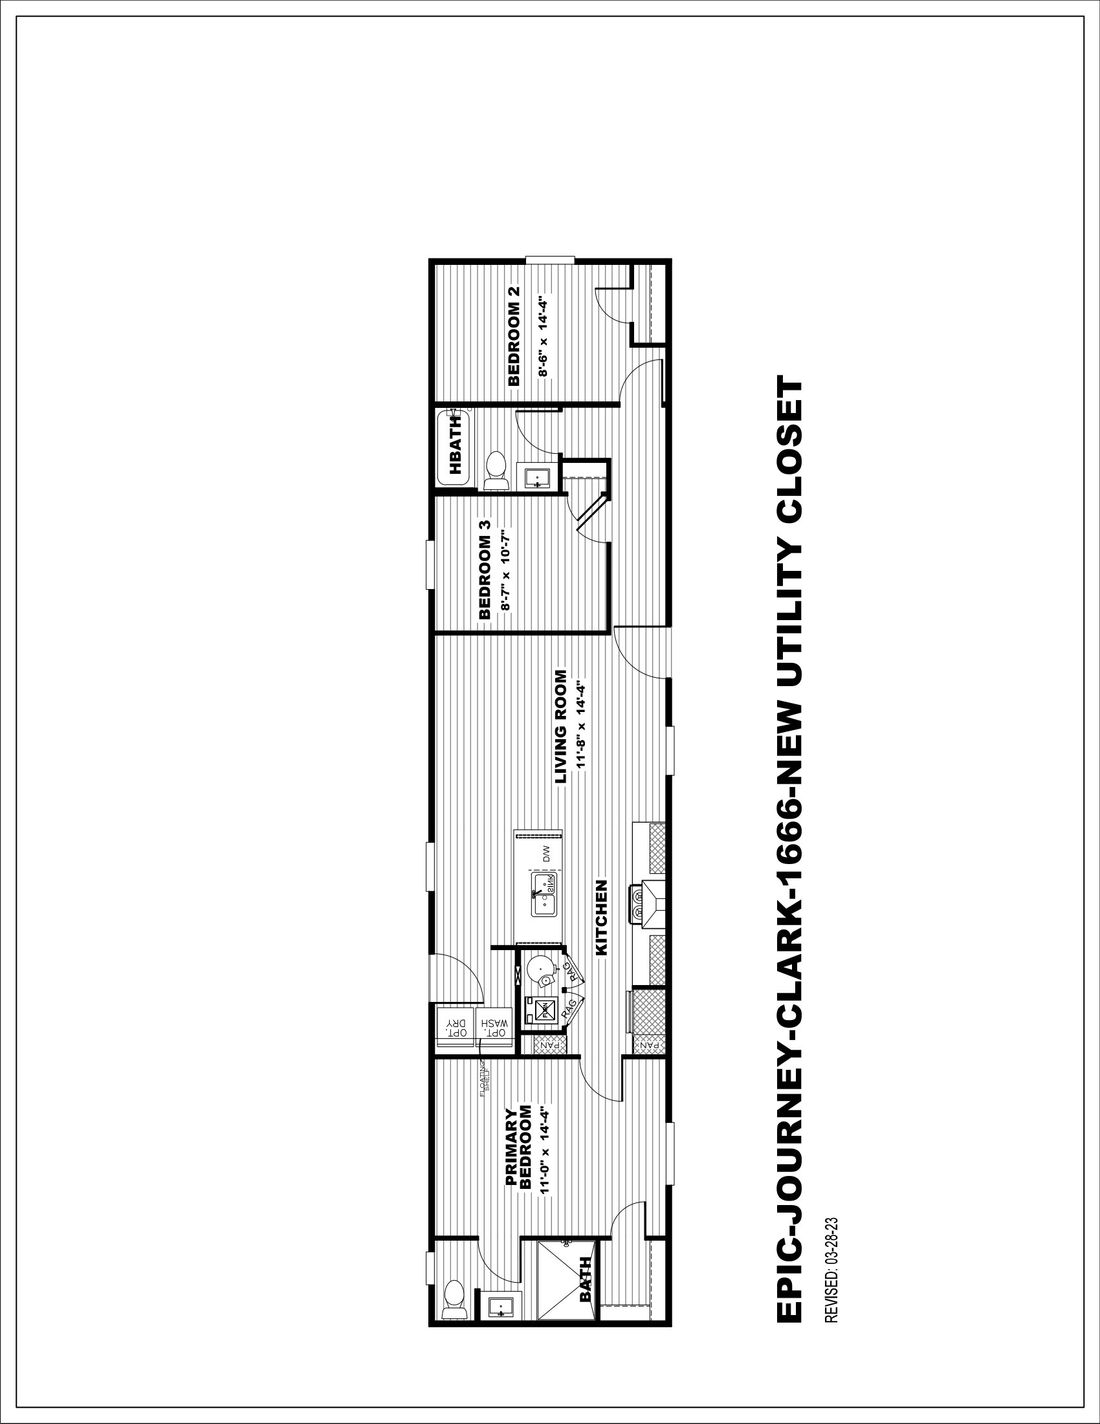 The CLARK 7016-1066 Floor Plan